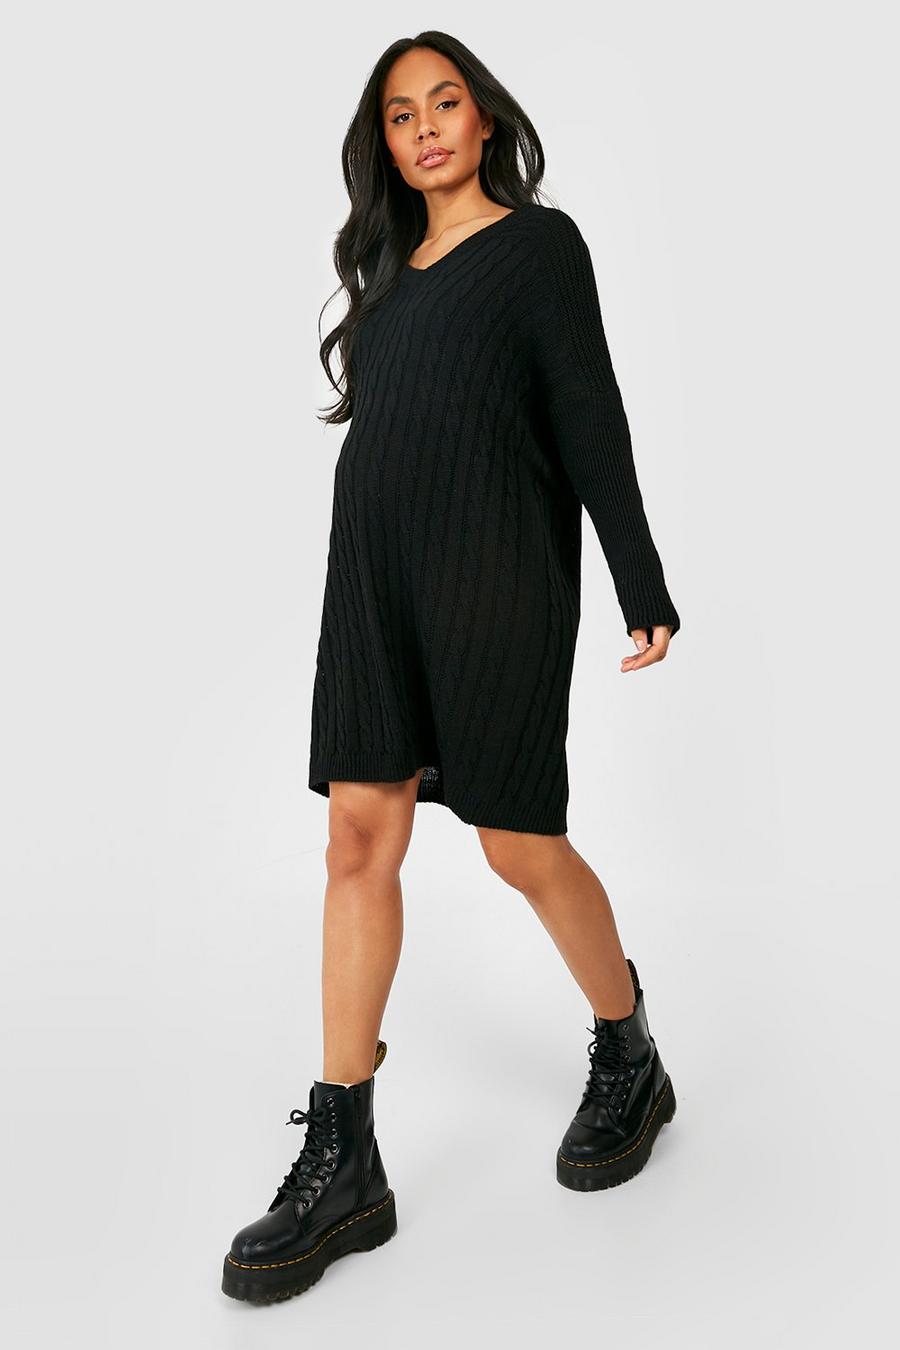 Black Maternity V Neck Knitted Jumper Dress